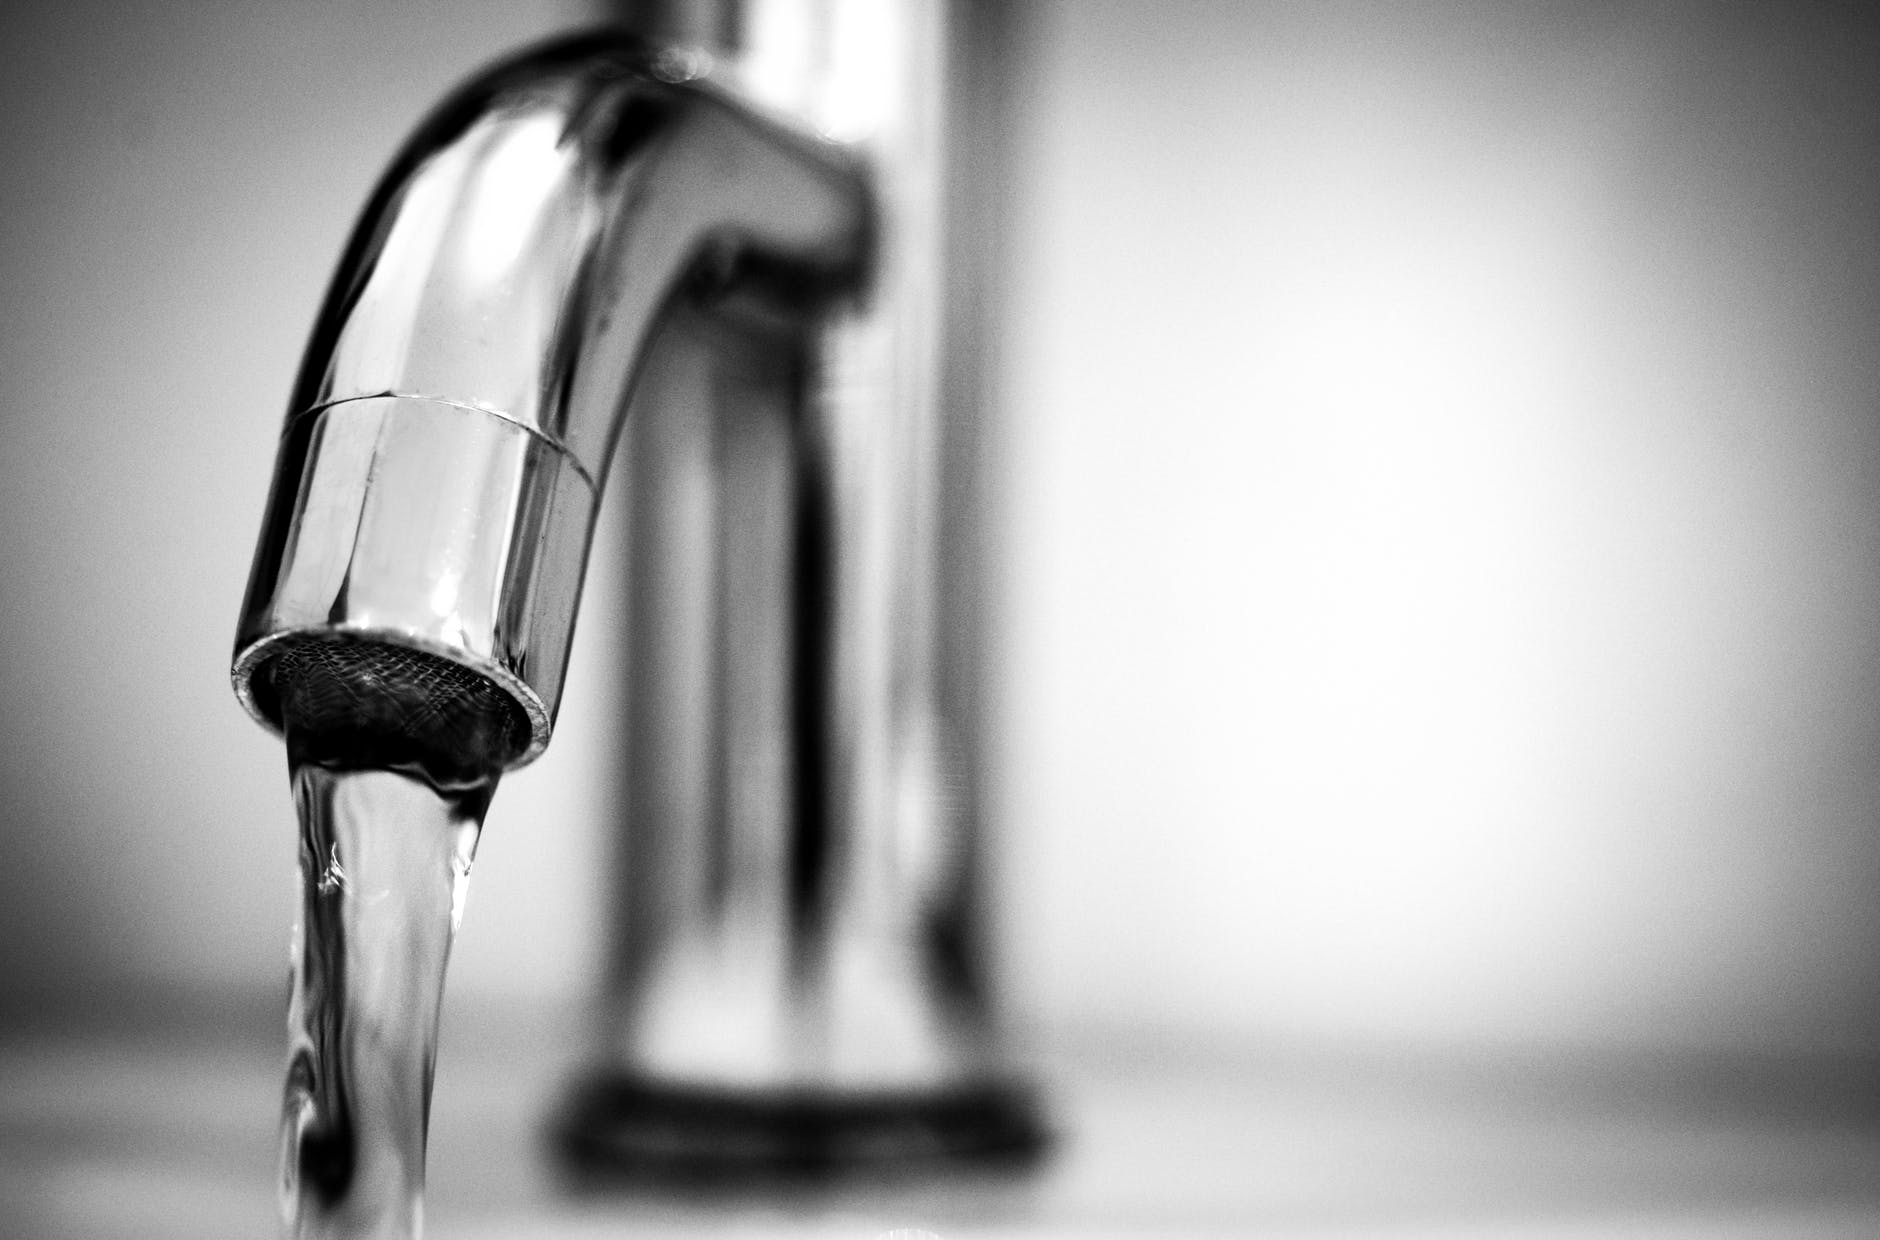 Lire la suite à propos de l’article Complément d’information concernant l’eau potable !